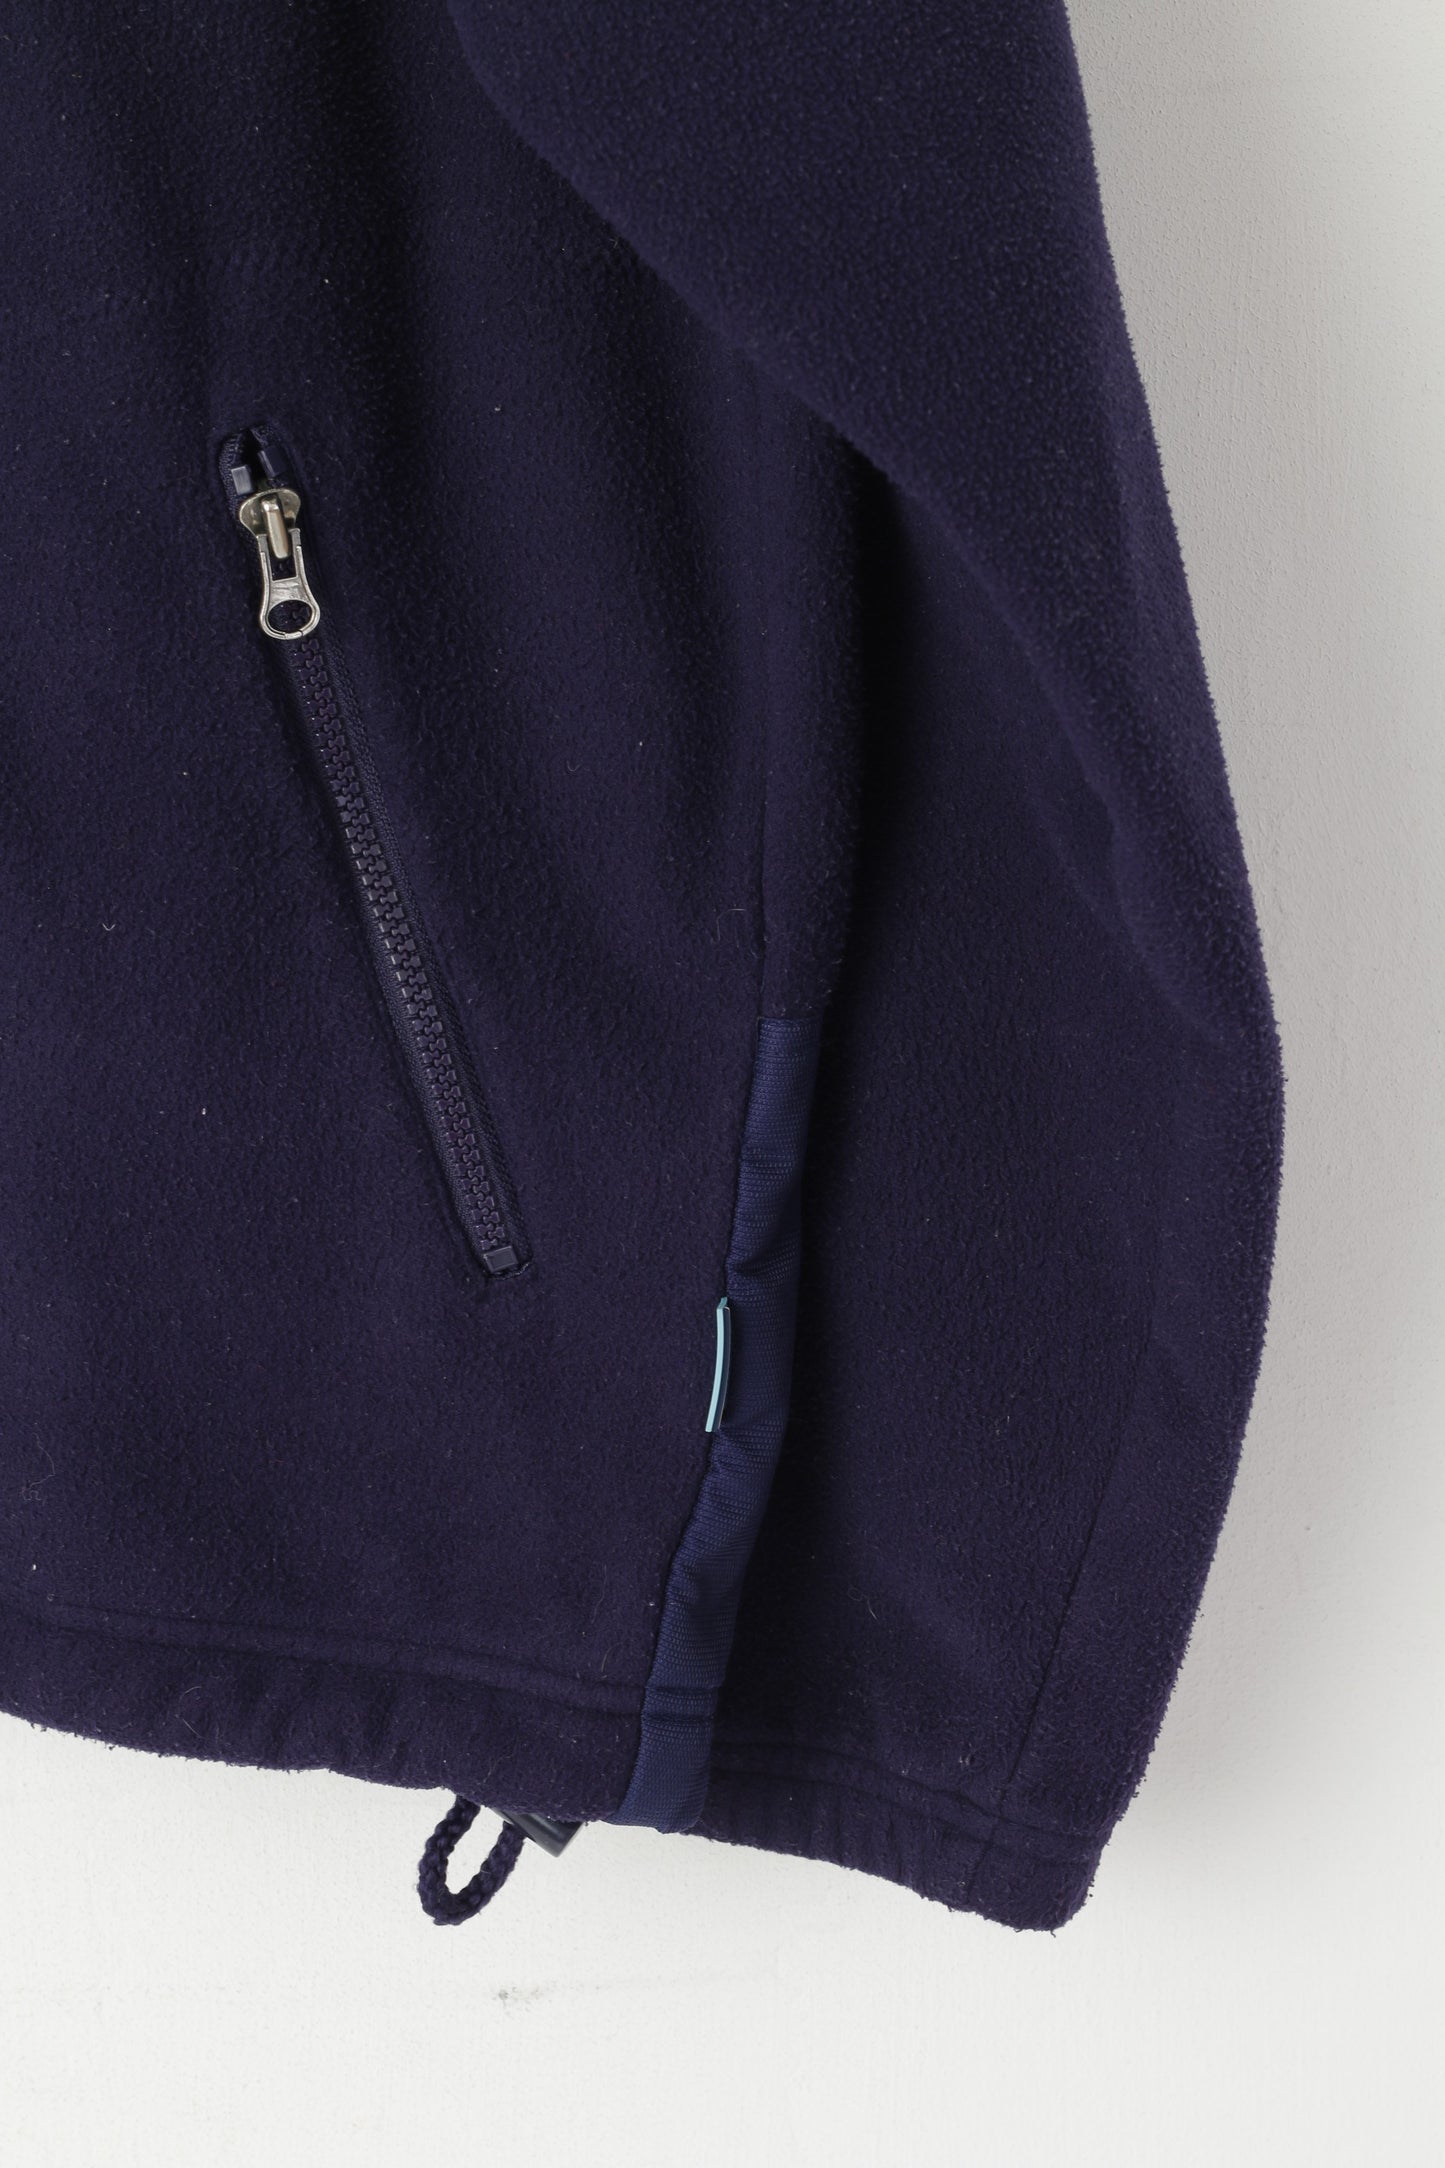 Ellesse Hommes M Veste Polaire Violet Fermeture Éclair Complète Sportswear Vintage Sweatshirt Top